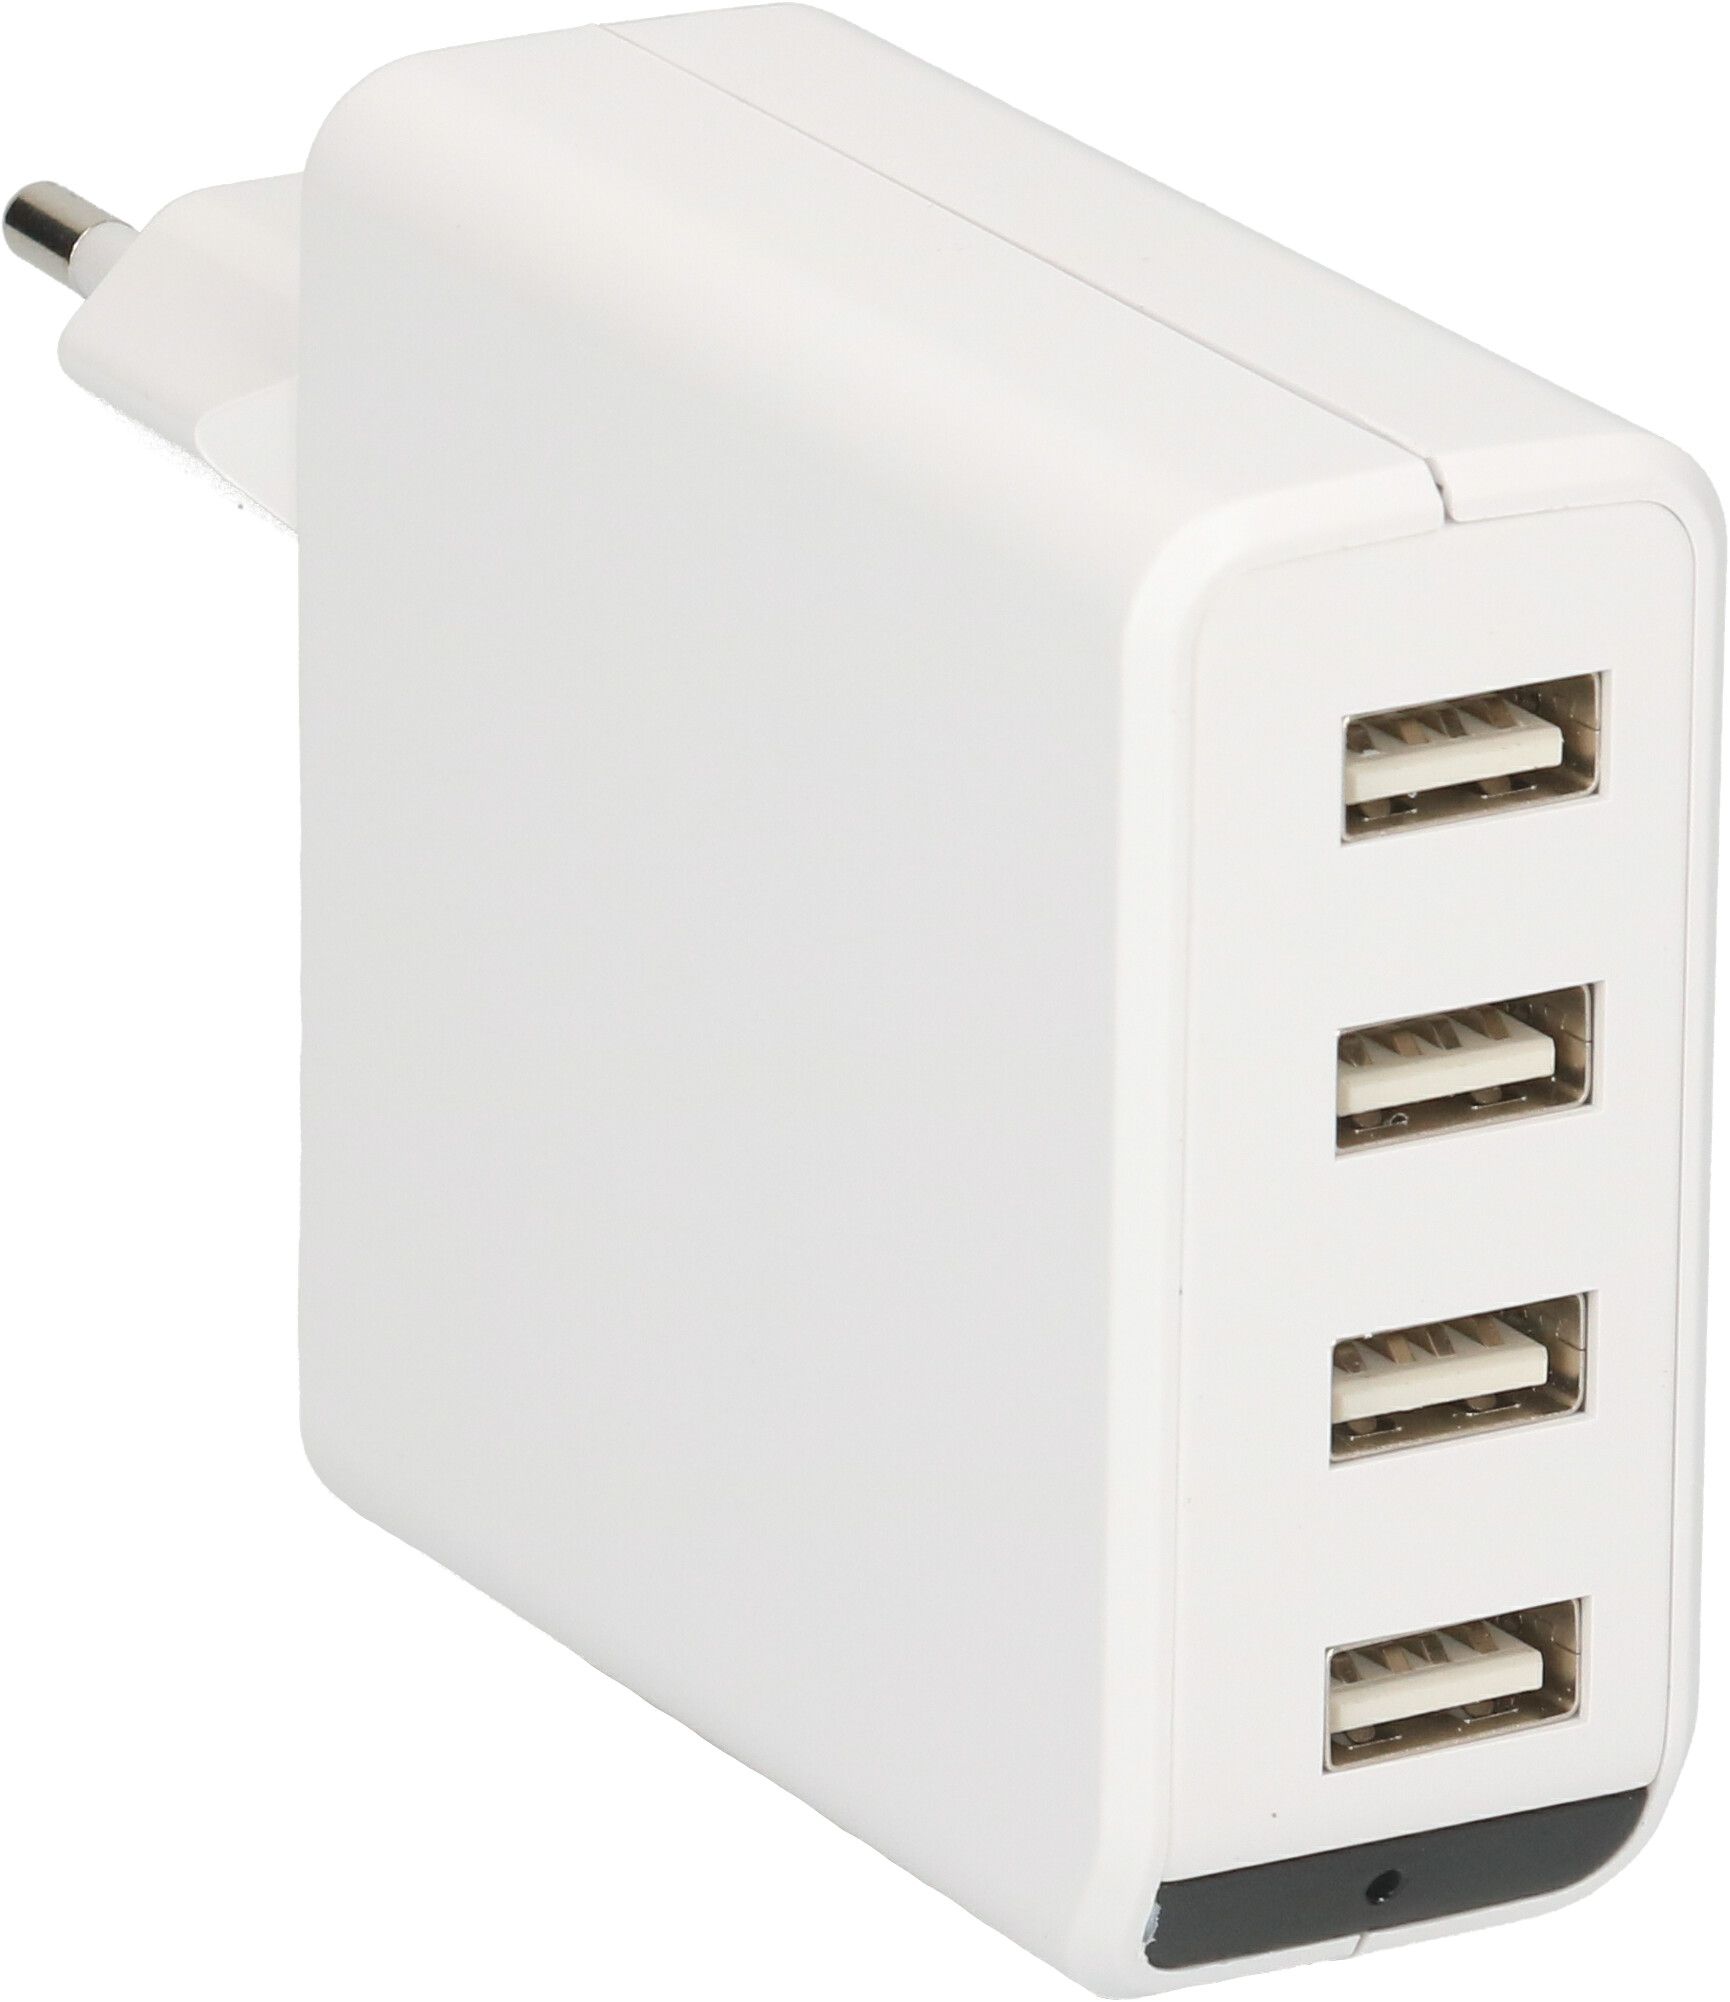 adaptateur de charge USB 4x USB-A 24W indicateur LED blanc